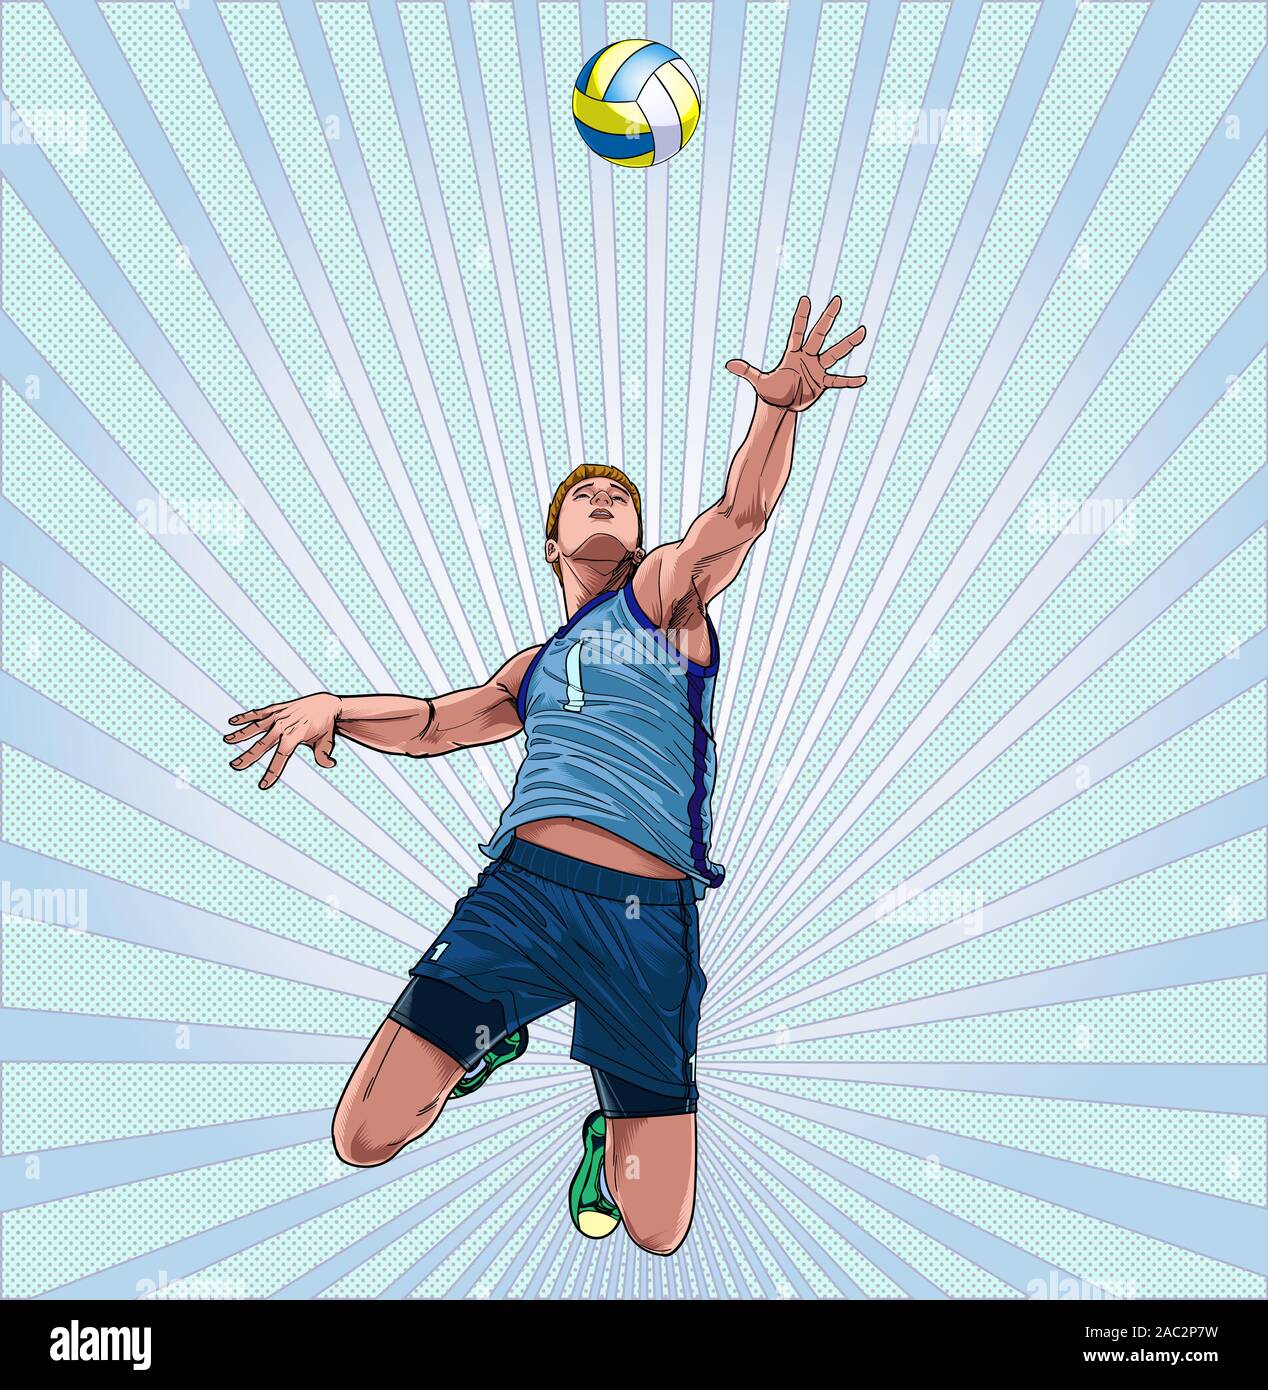 Ein Mann spielt Volleyball hoch wie Point Illustration Vektor auf Pop Art Comic Stil Abstract zu springen Dot Stock Vektor